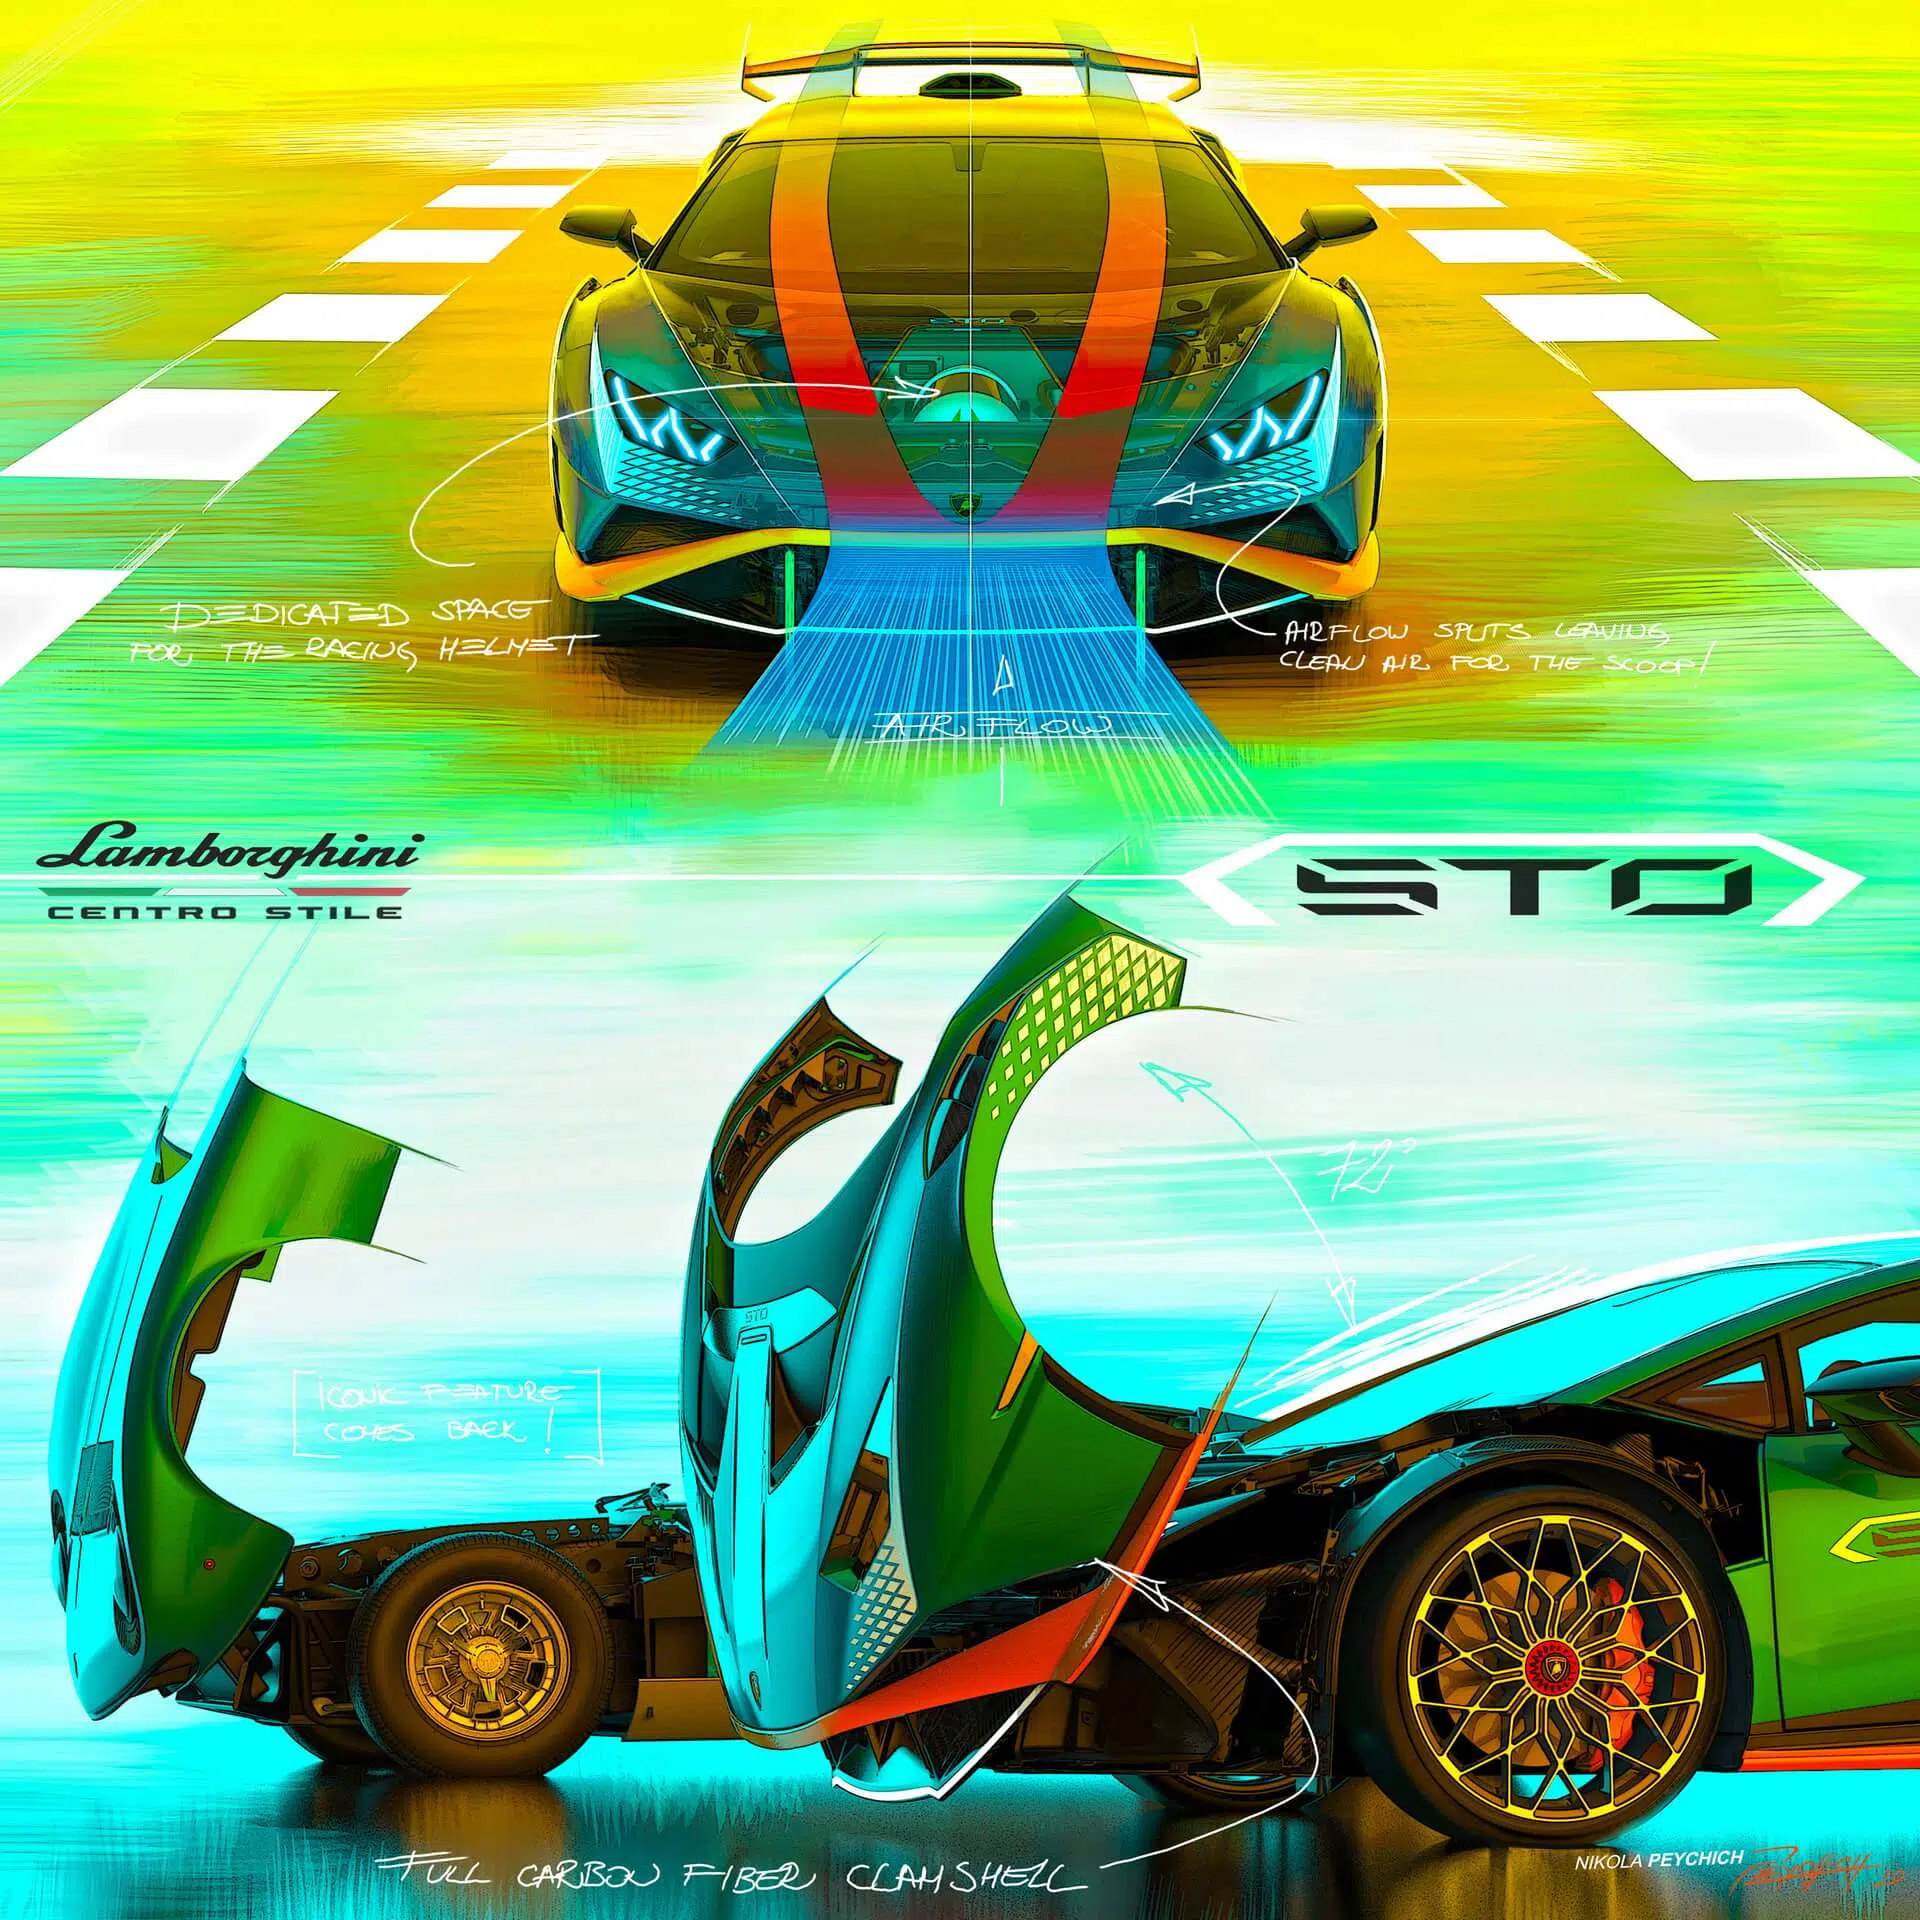 Lamborghini cofango